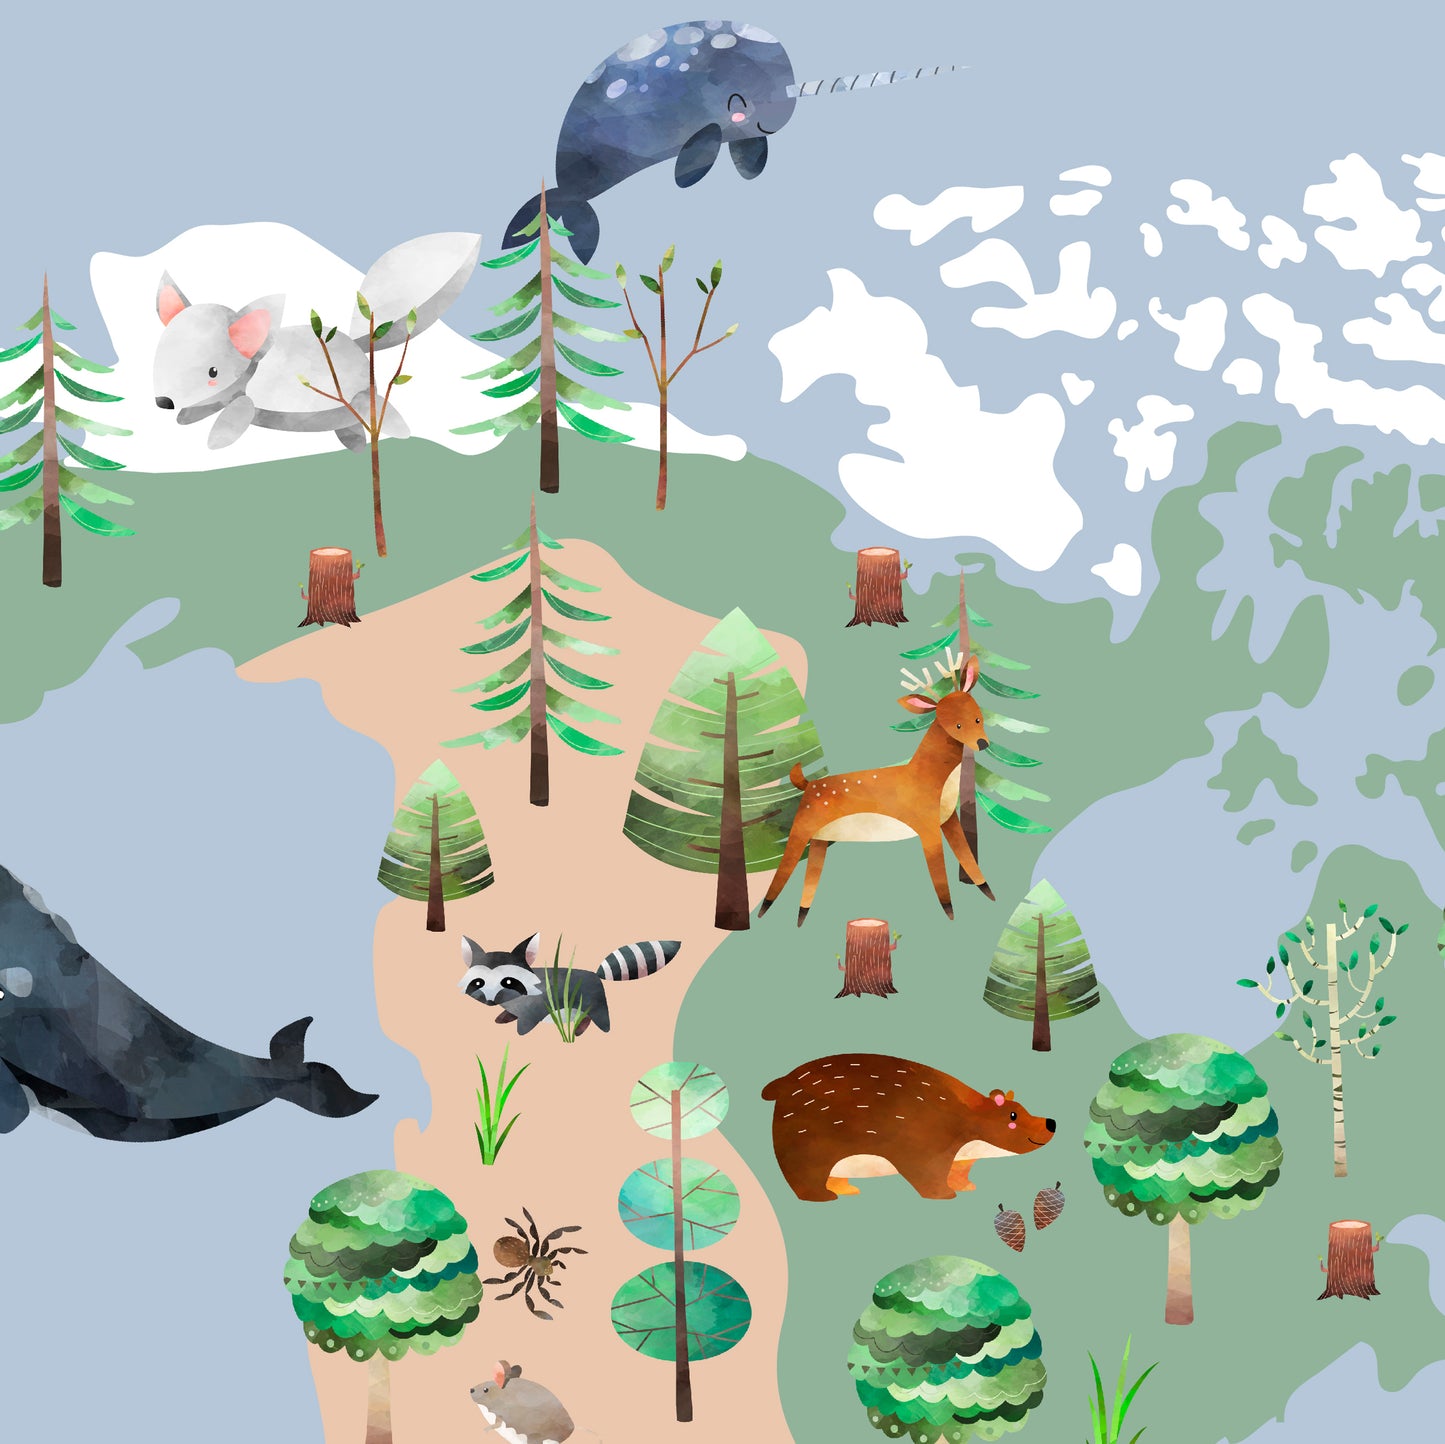 apprentissage amusant | Carte du monde des animaux | Non. 2